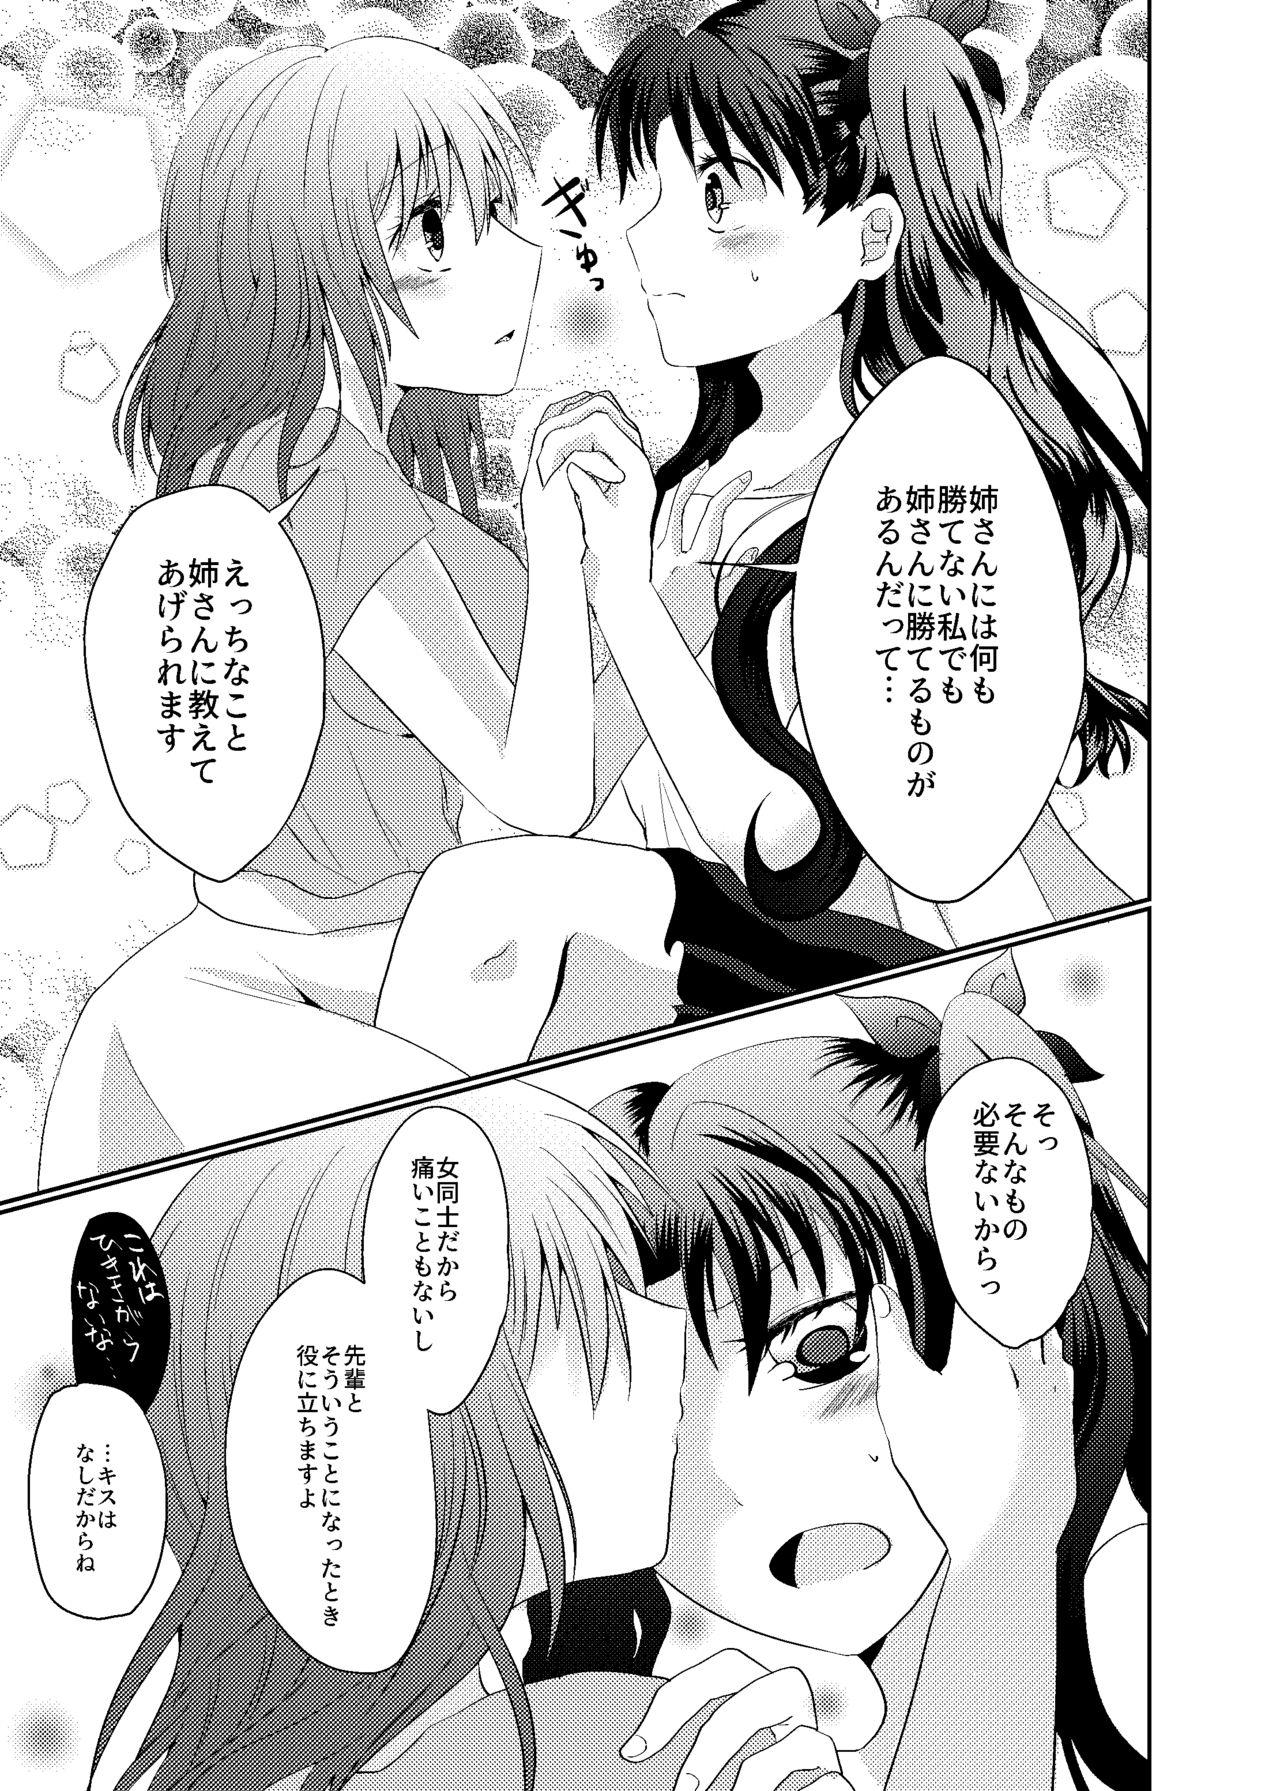 Con Tosaka Shimai no Atsui Natsu - Fate stay night Loira - Page 7